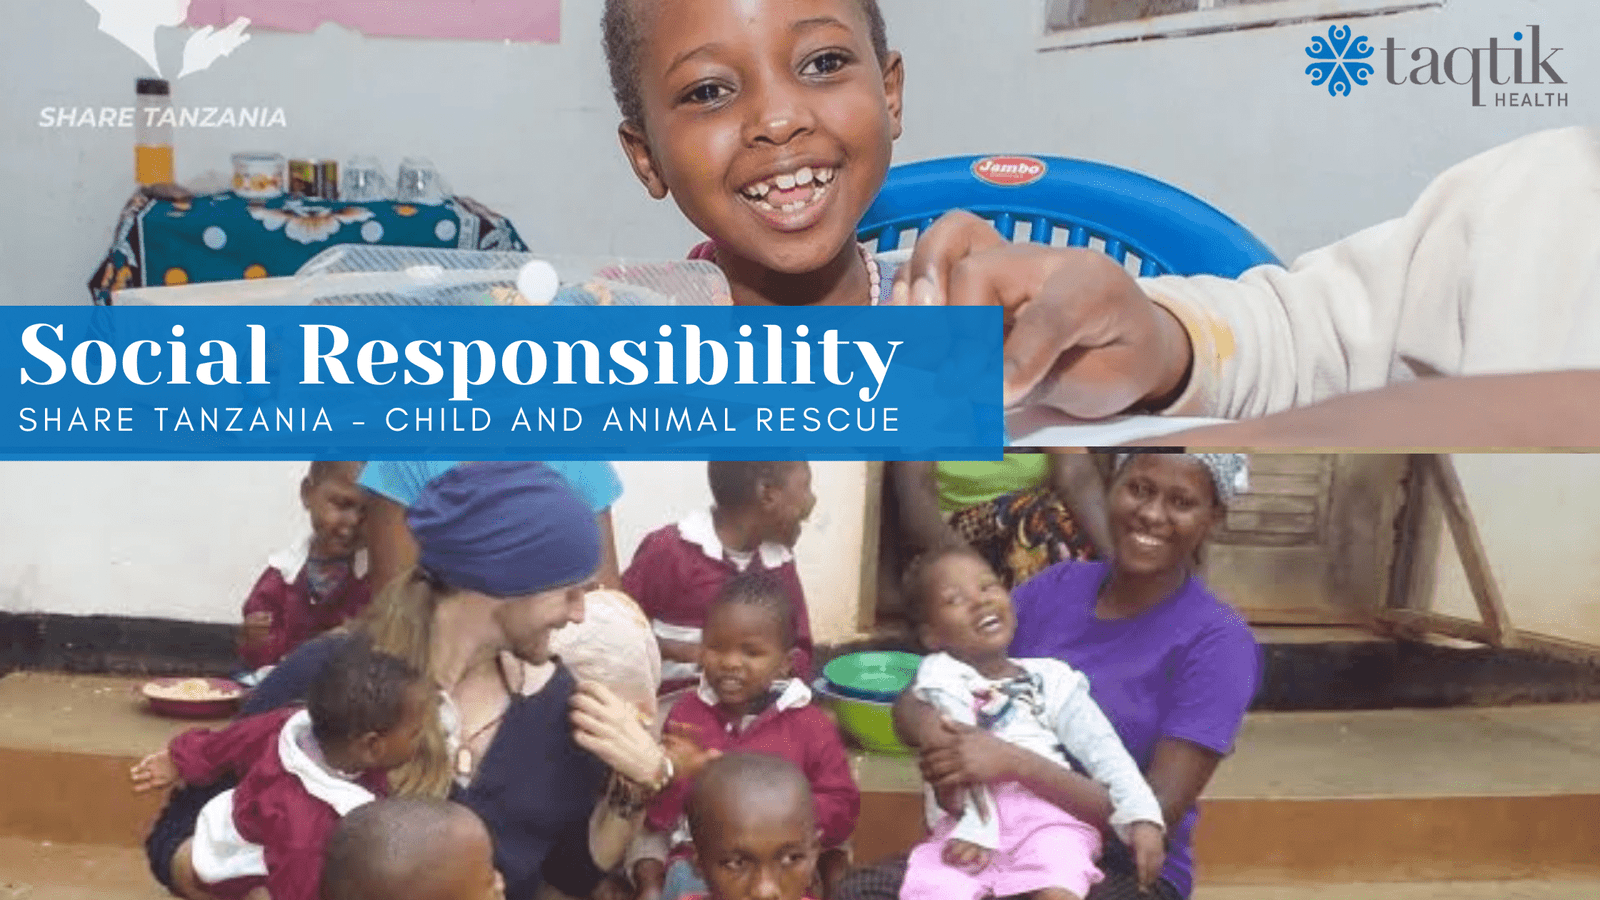 Share Tanzania - child and animal rescue